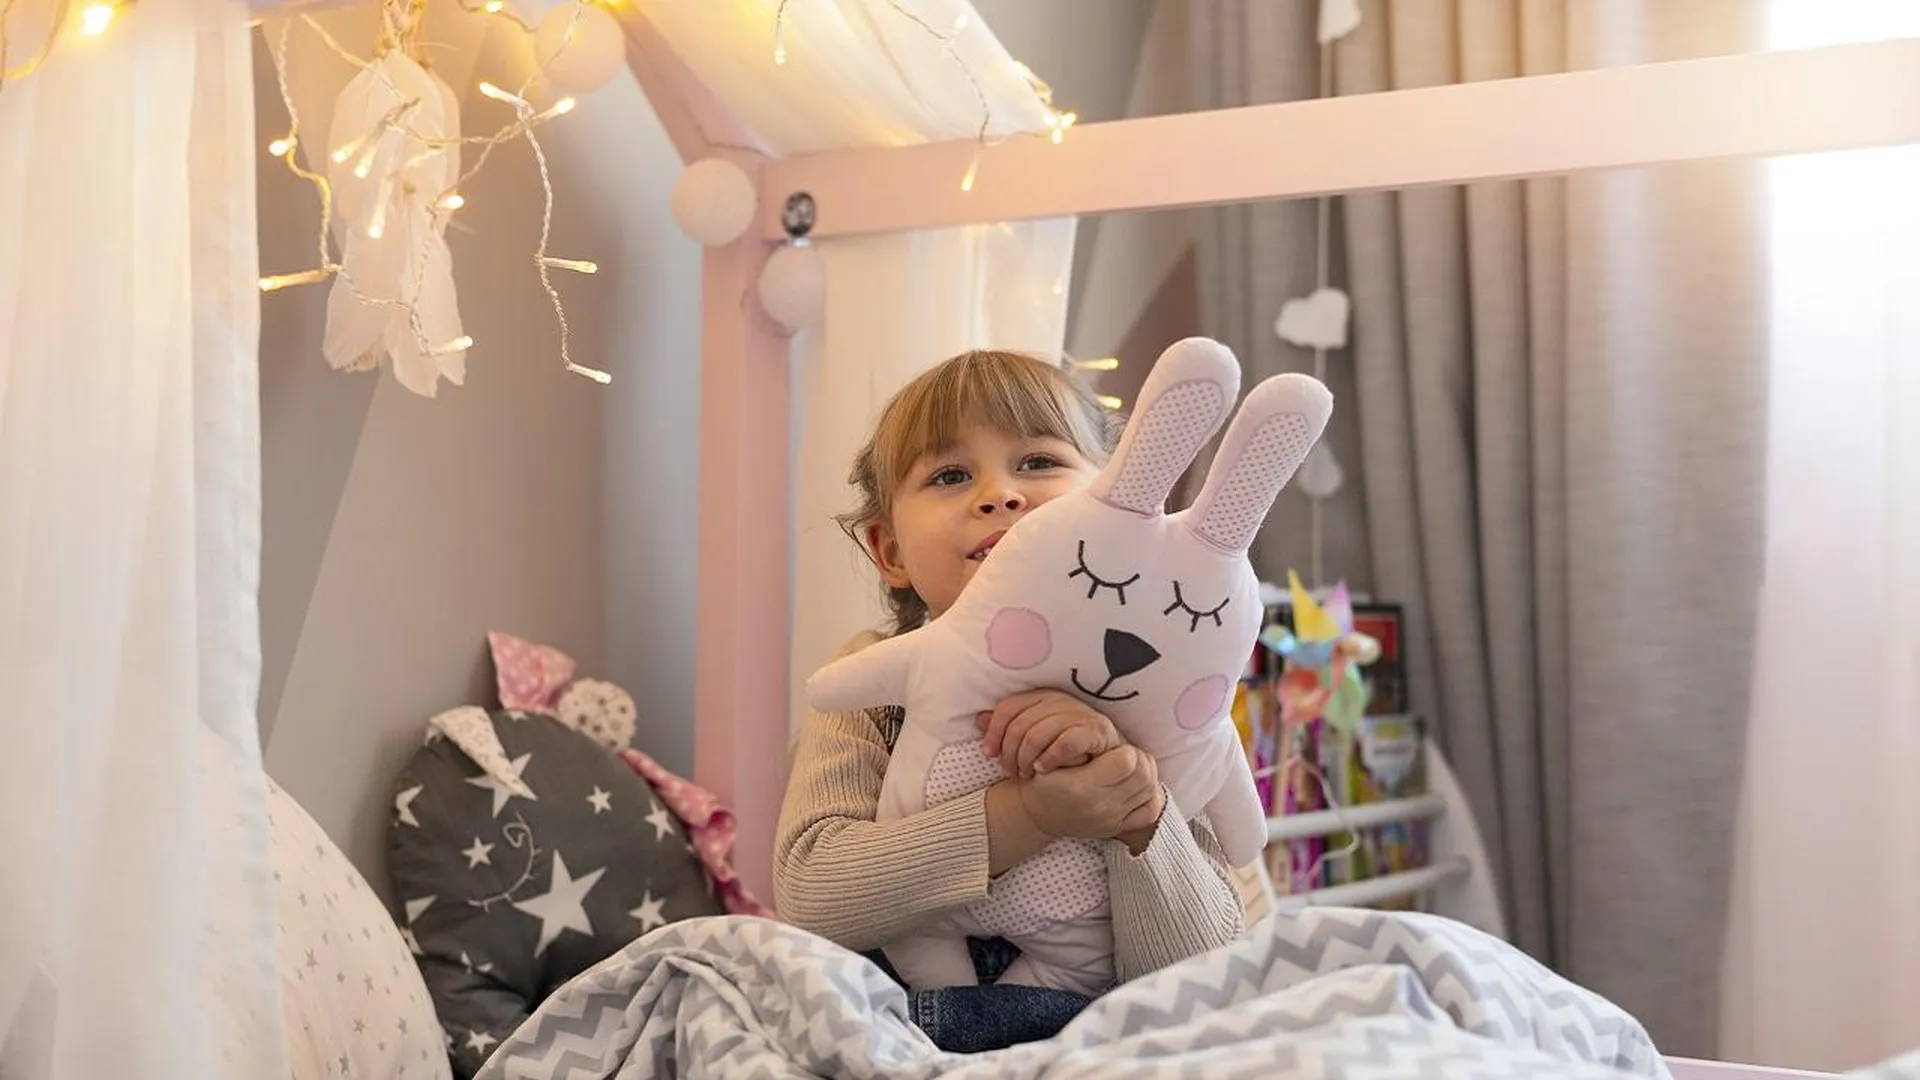 Ночник, гирлянды и мягкая игрушка: как оформить детскую, чтобы ребенок был счастлив